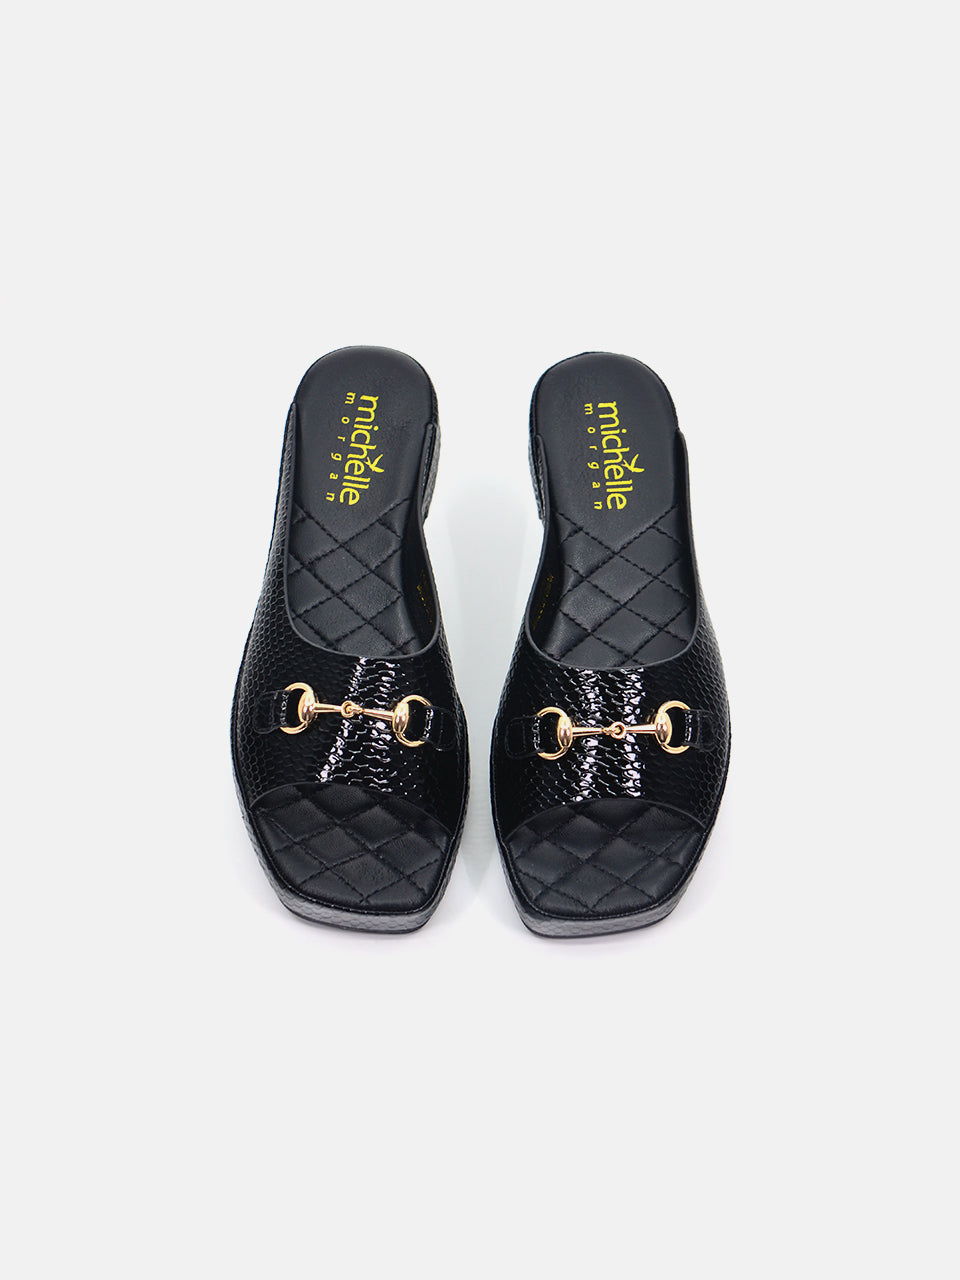 Michelle Morgan 114RJ93E Women's Flat Sandals #color_Black